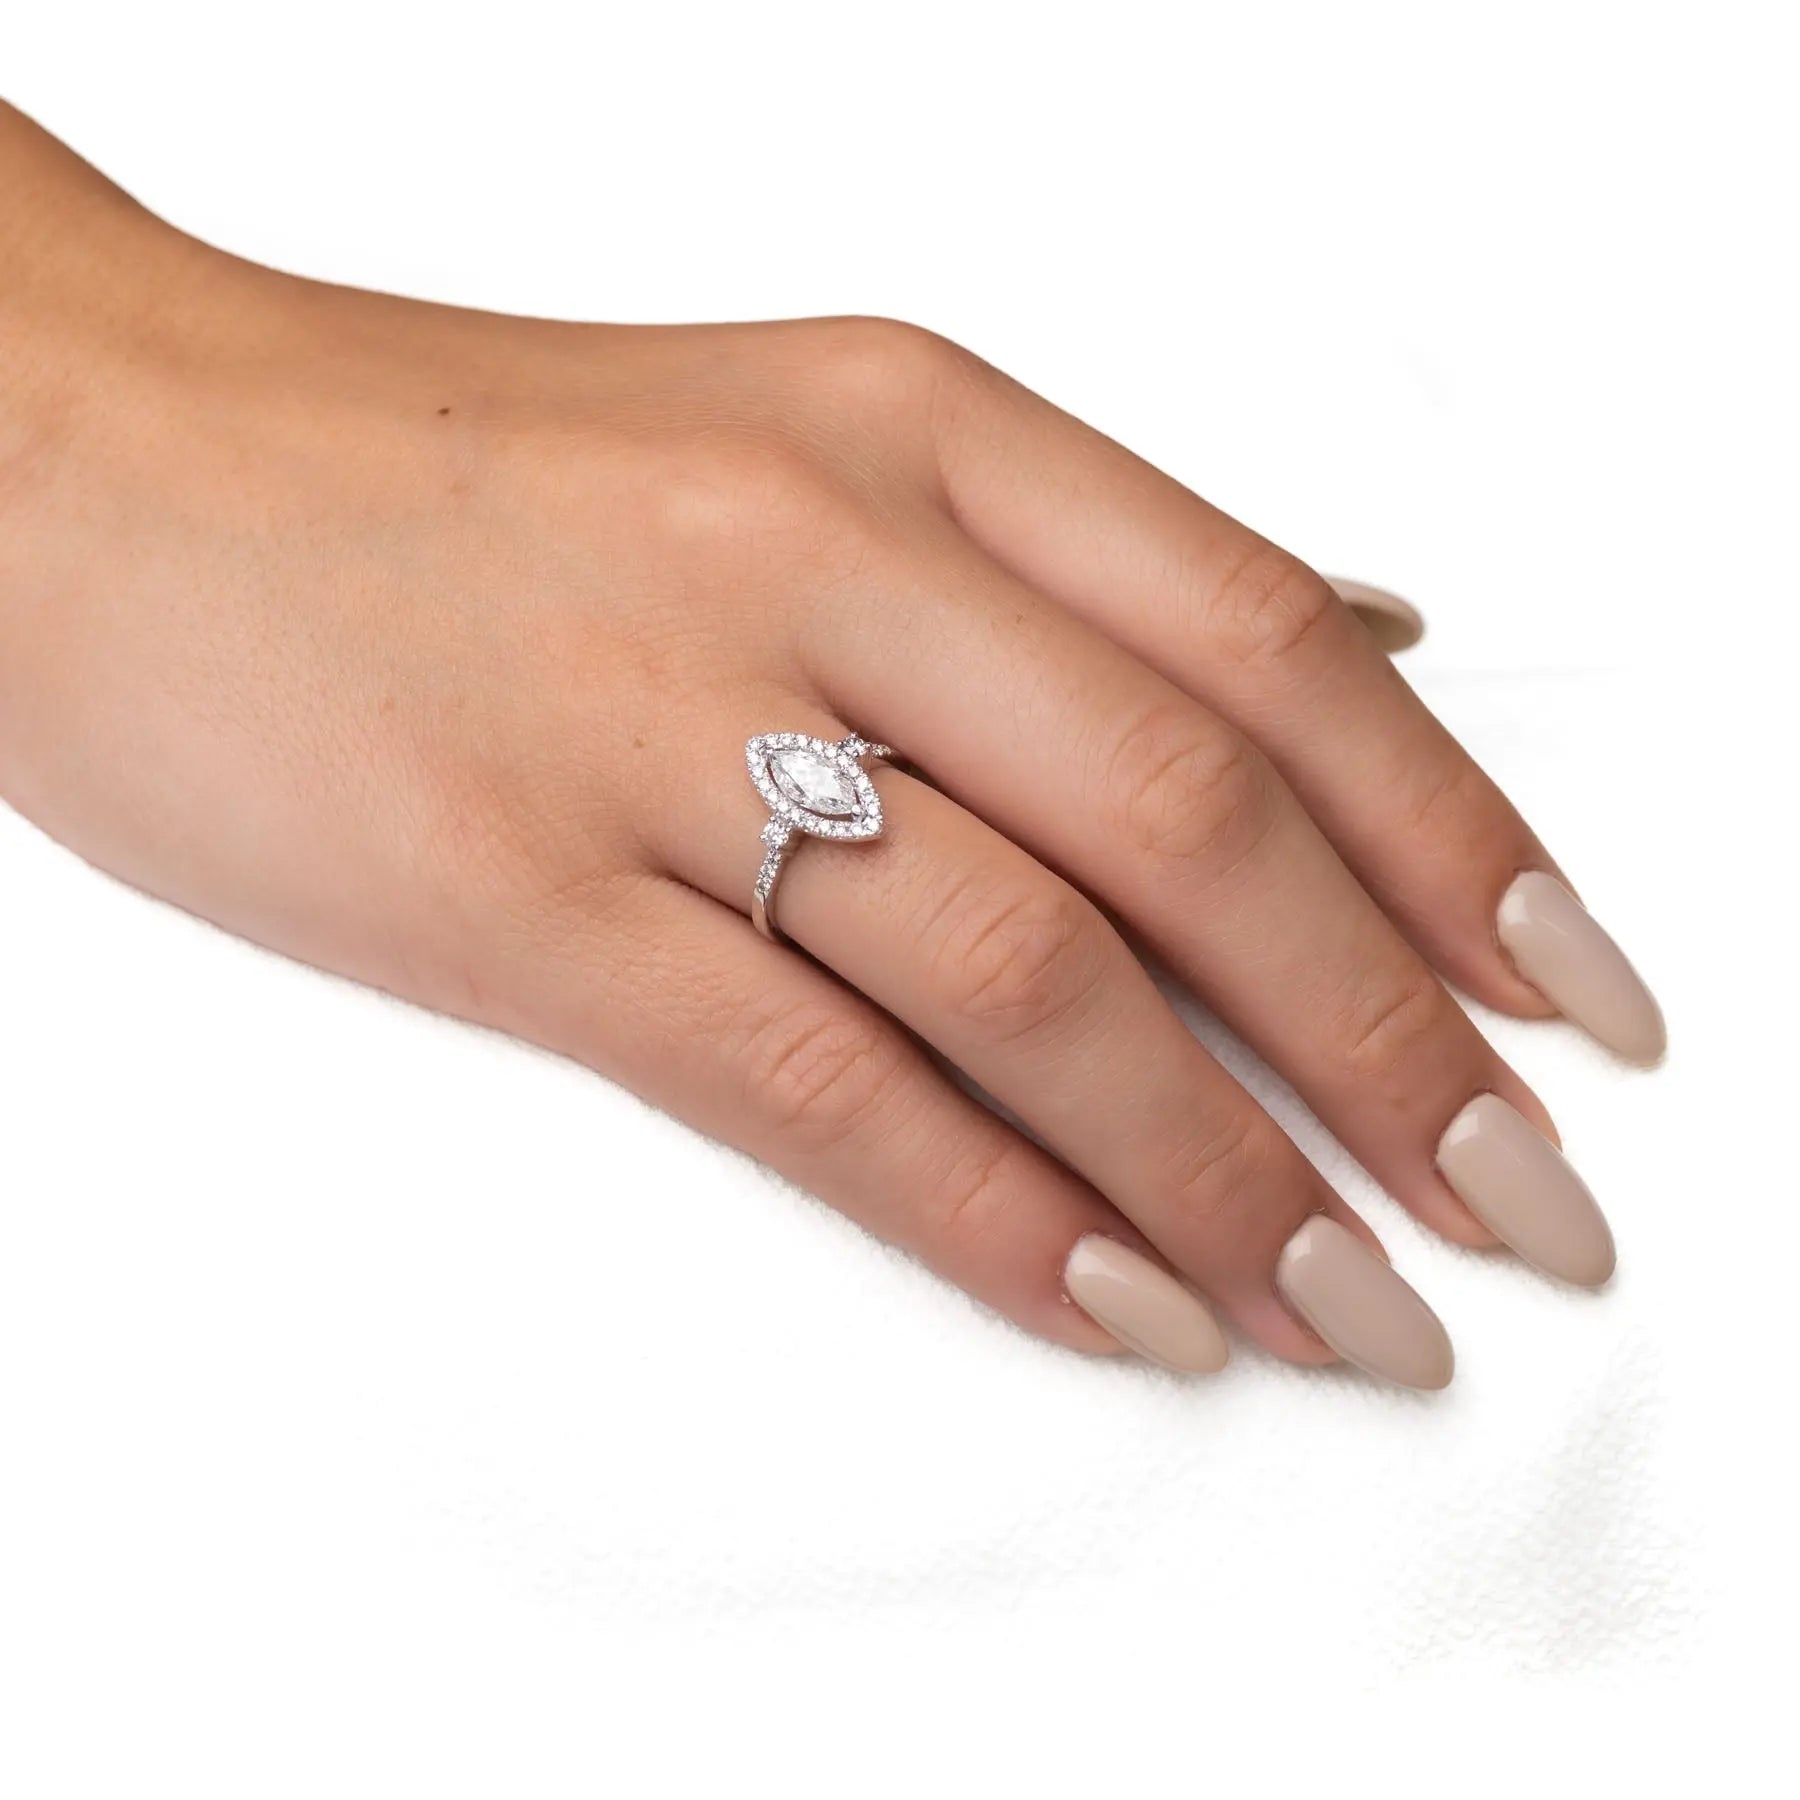 טבעת מעוצבת פדות Fermond Jewelery